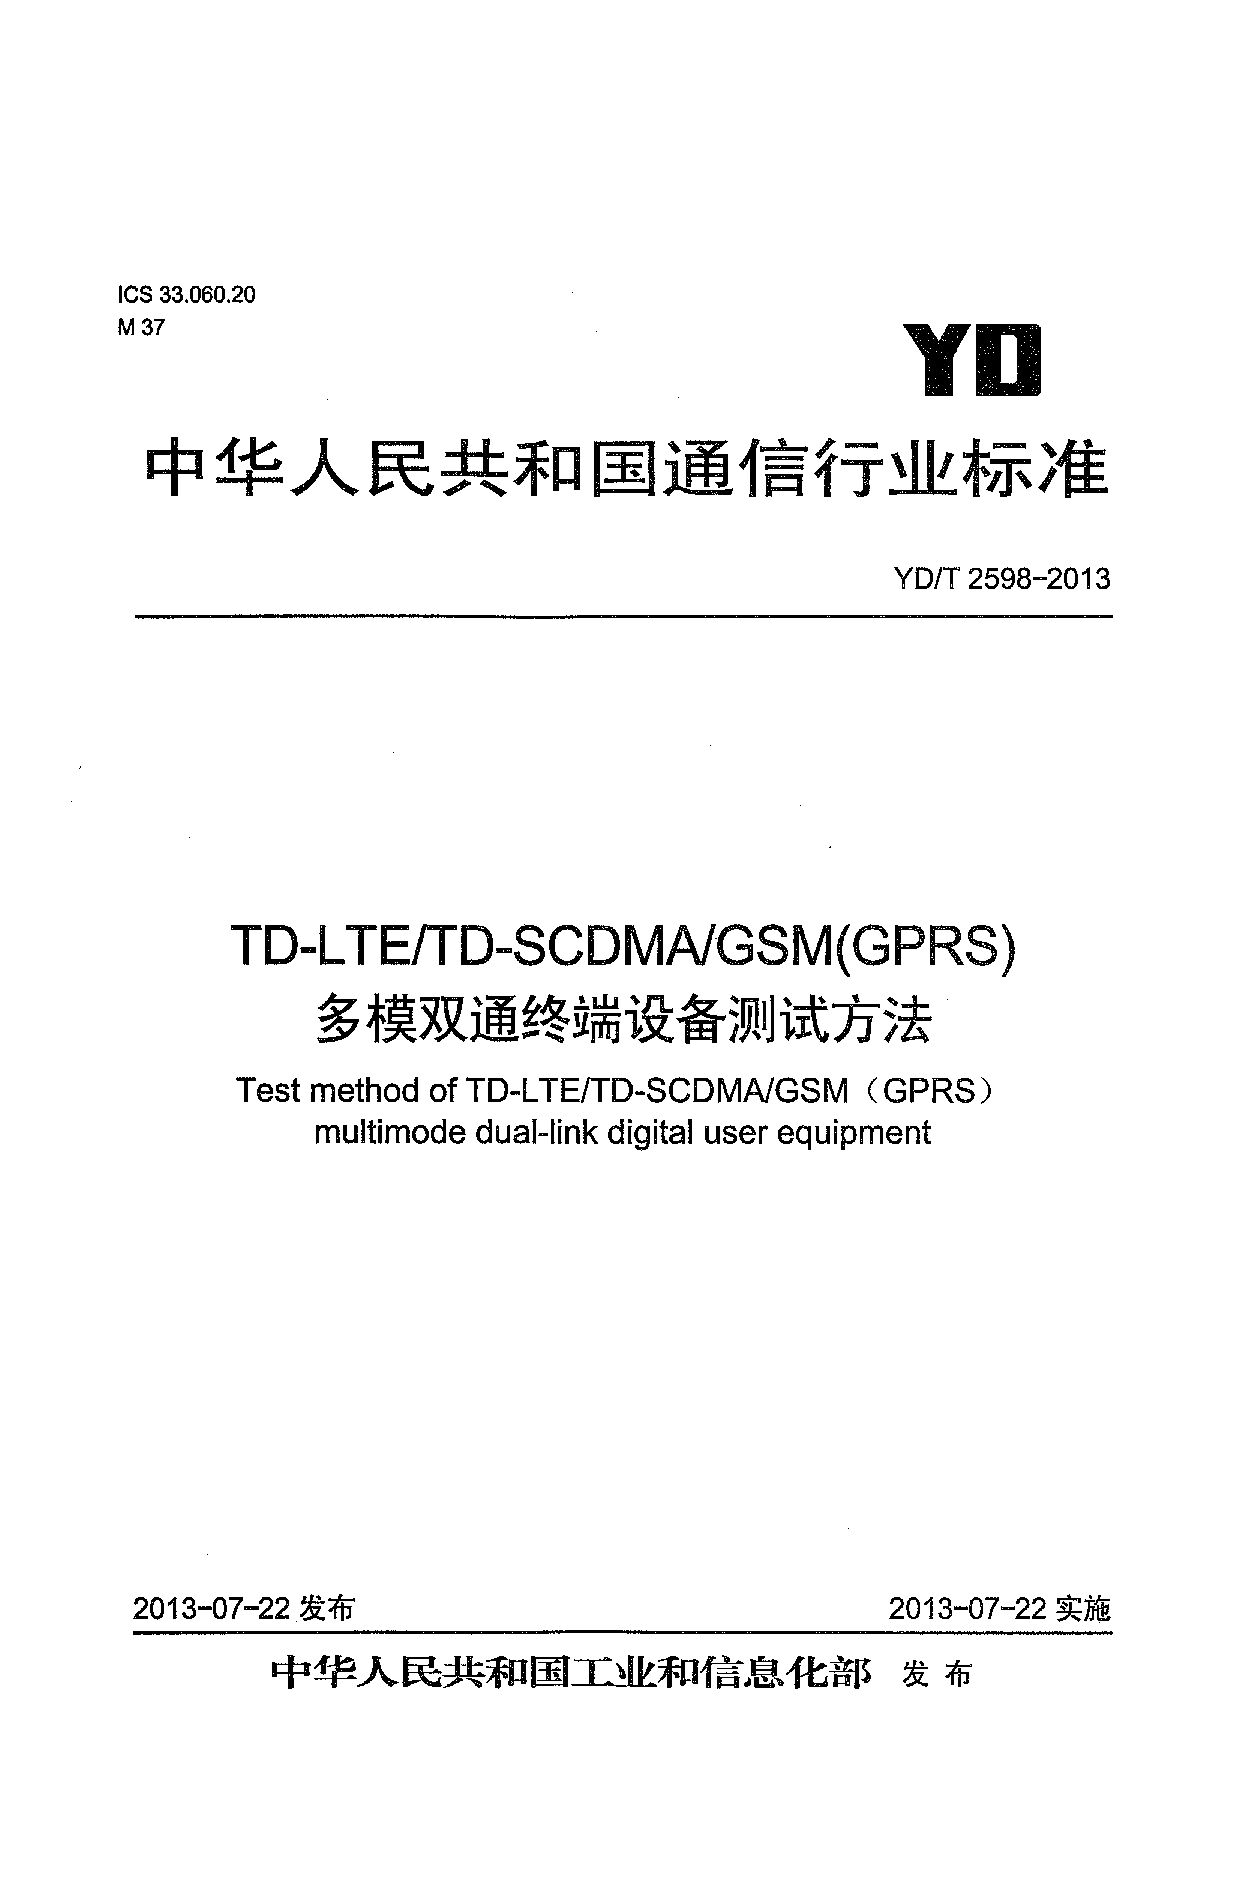 YD/T 2598-2013